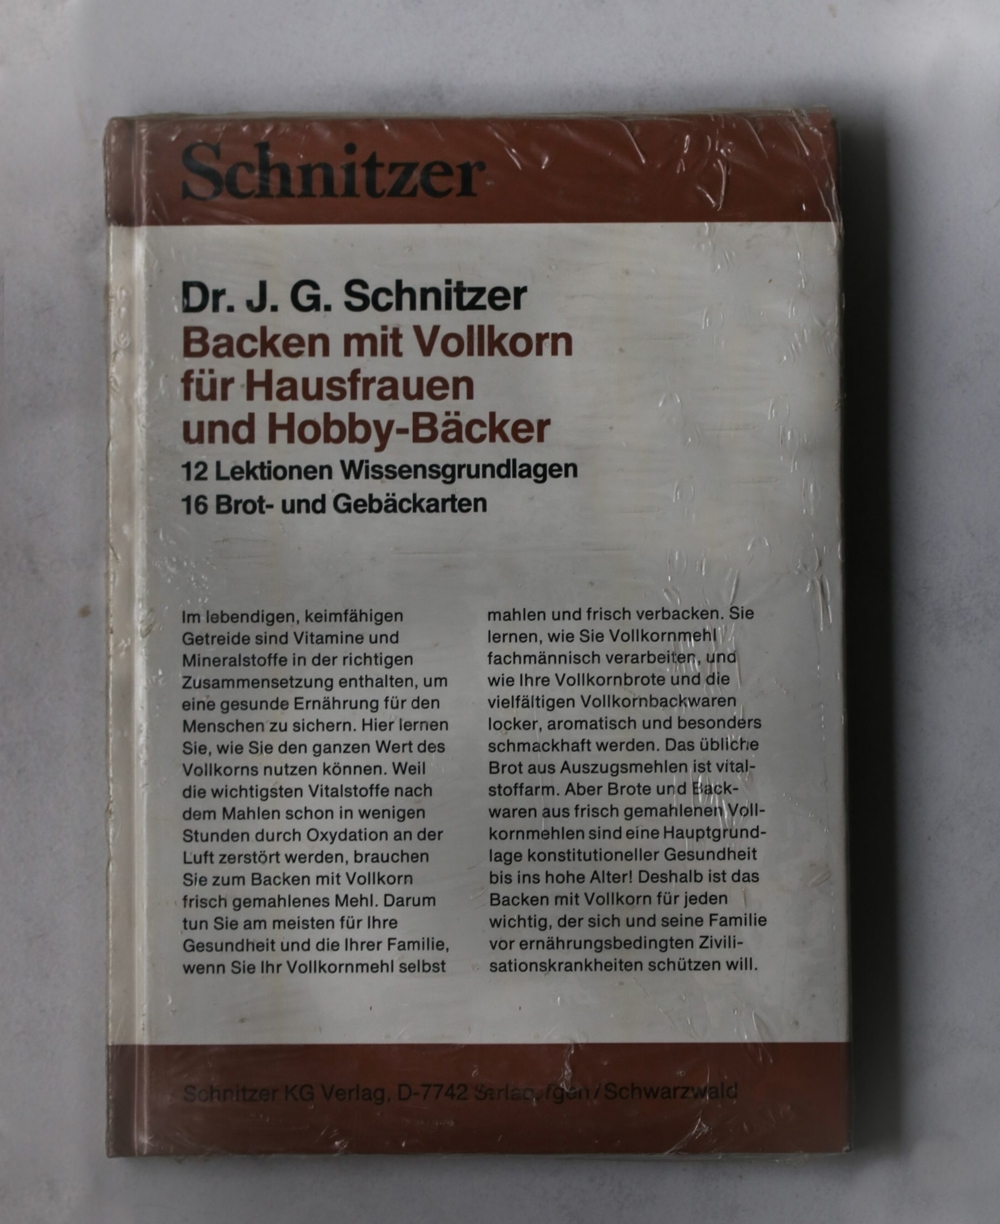 Dr. J.G. Schnitzer "Backen mit Vollkorn" für Hausfrauen und Hobby-Bäcker